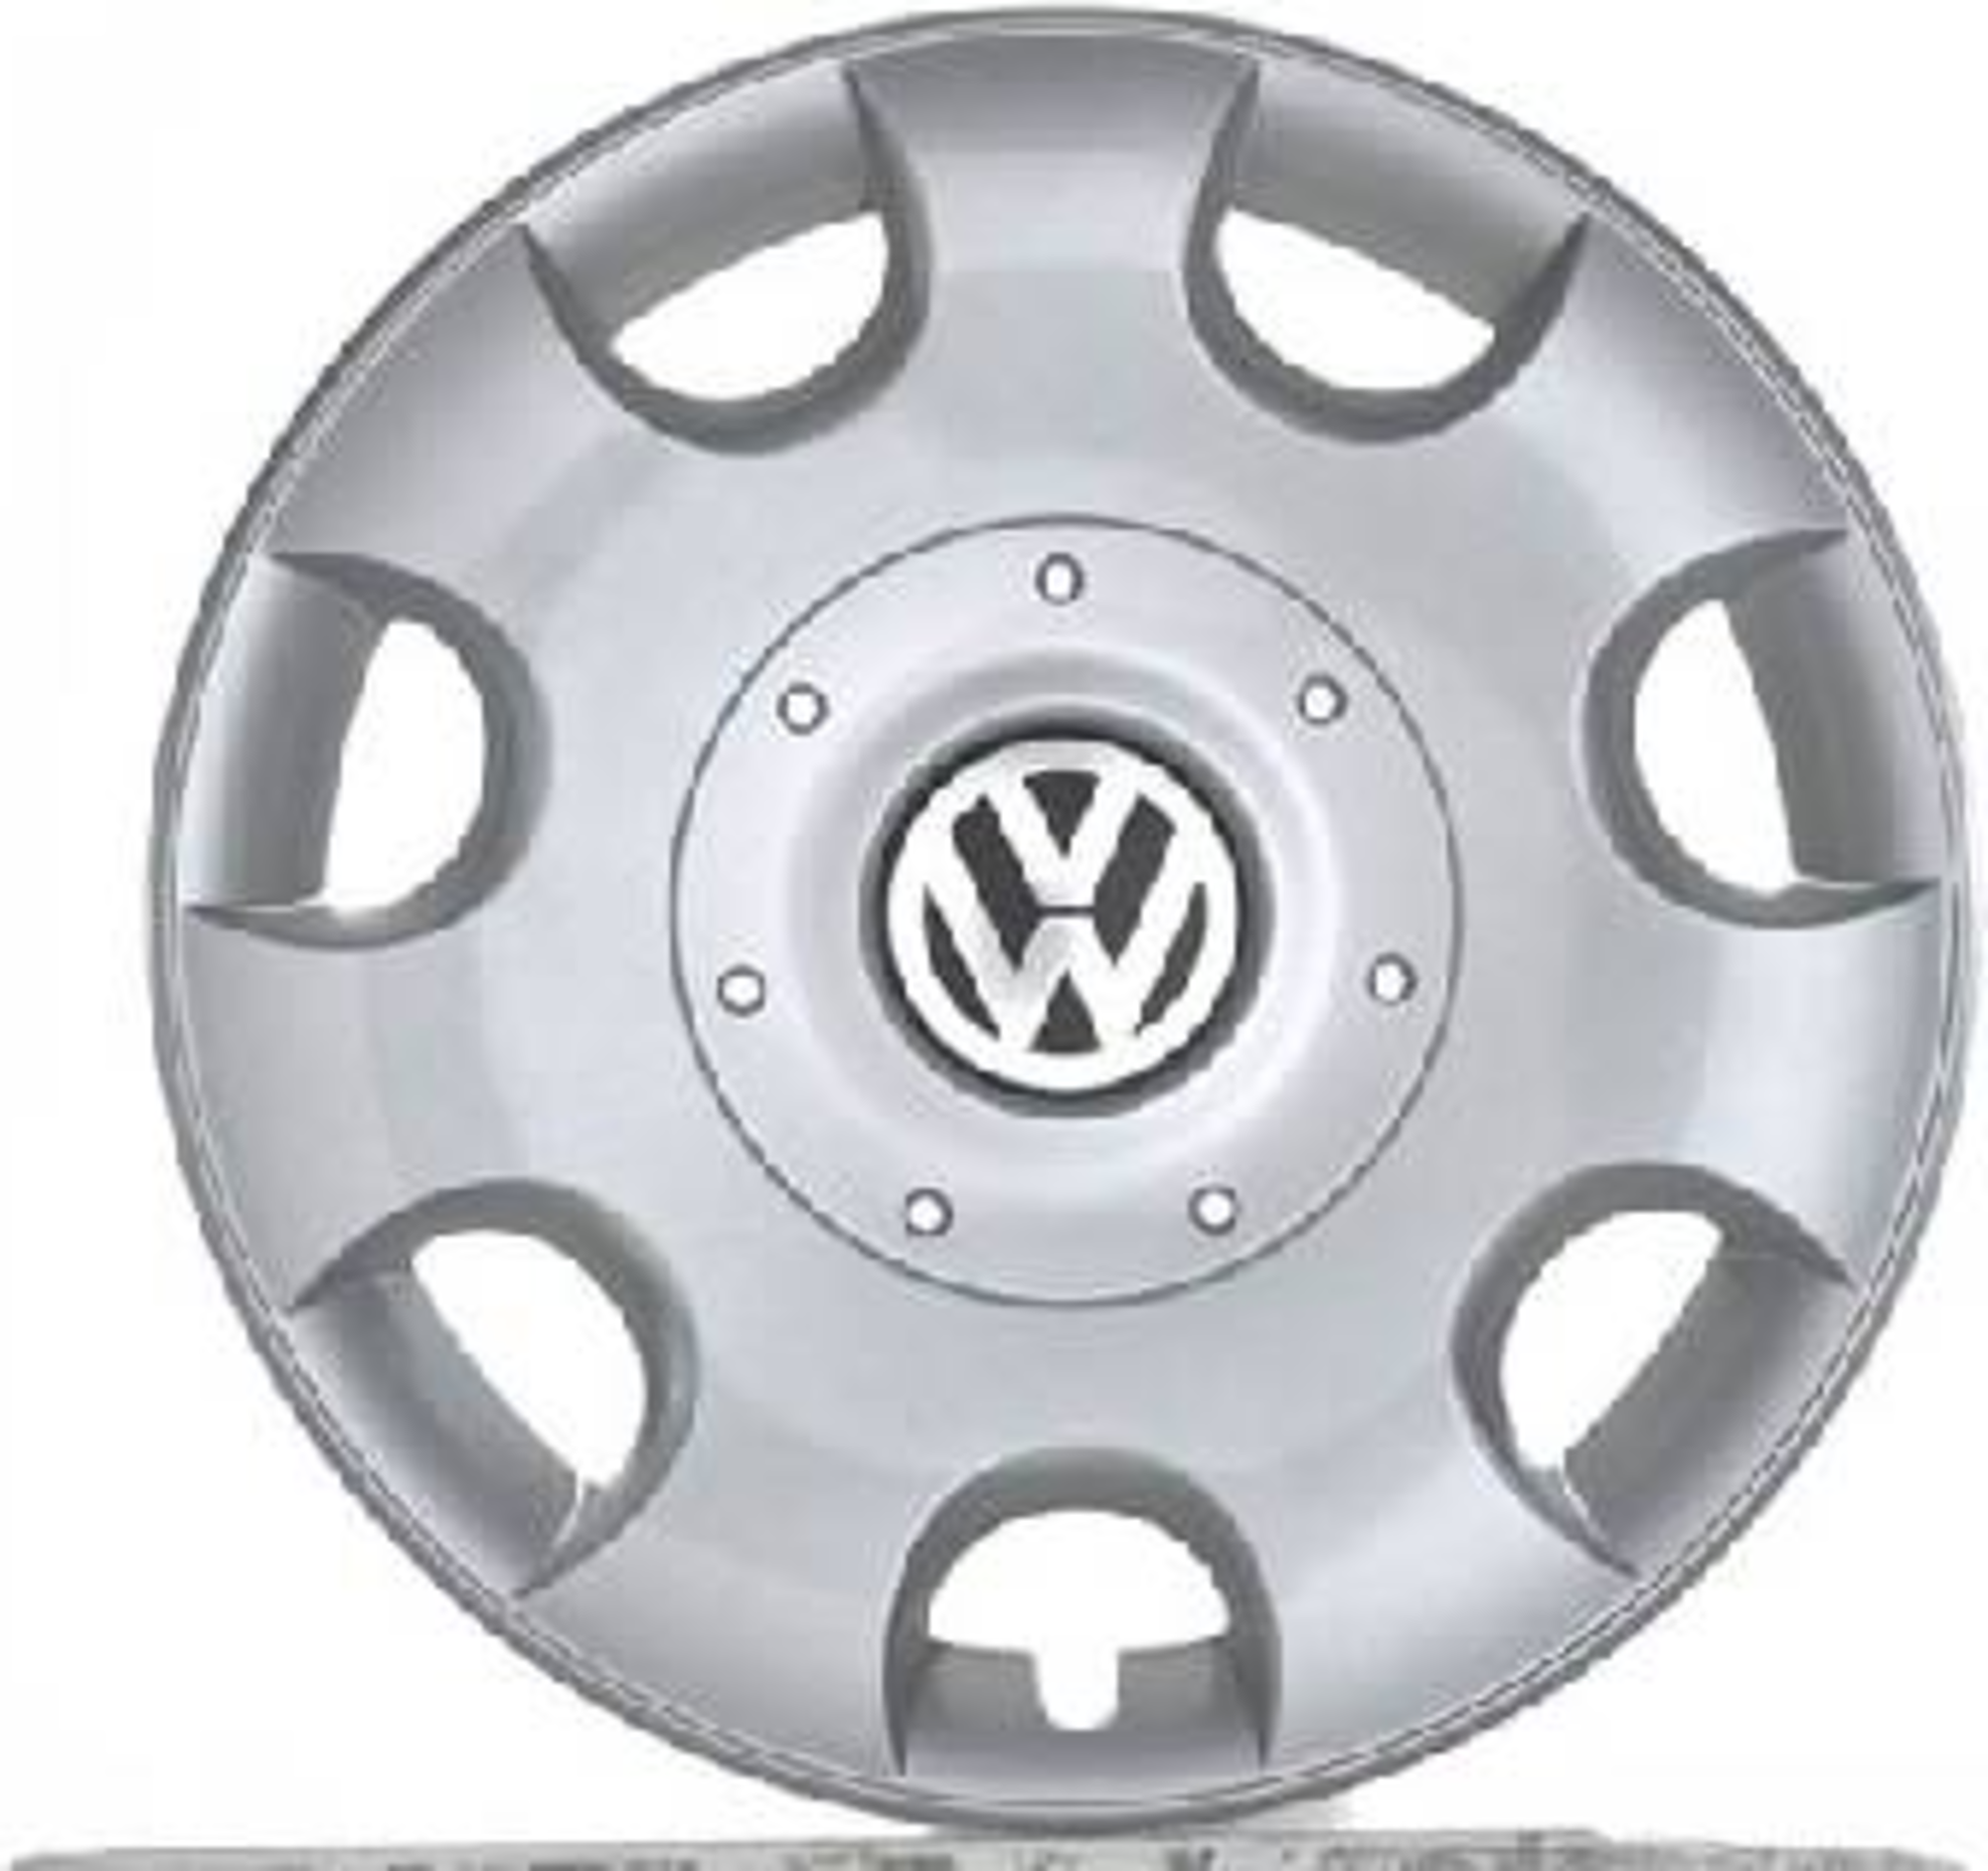 Volkswagen - Enjoliveurs